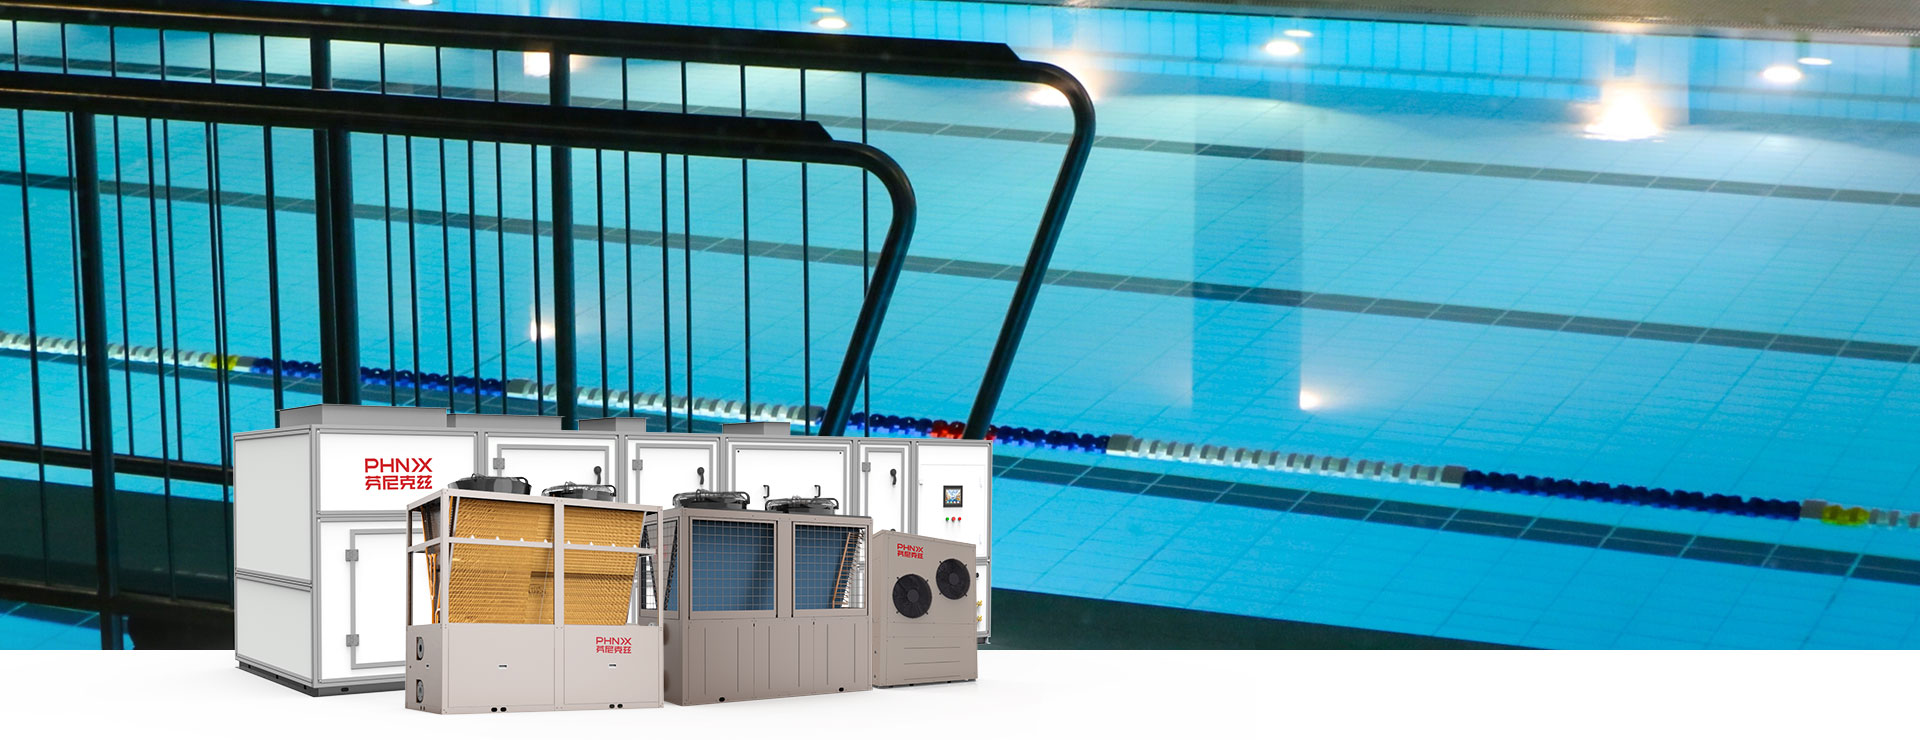 工程方案_解决方案_1920900px采用泳池三集一体恒温除湿热泵泳池热泵泳池空调热泵泳池热水热泵1.jpg